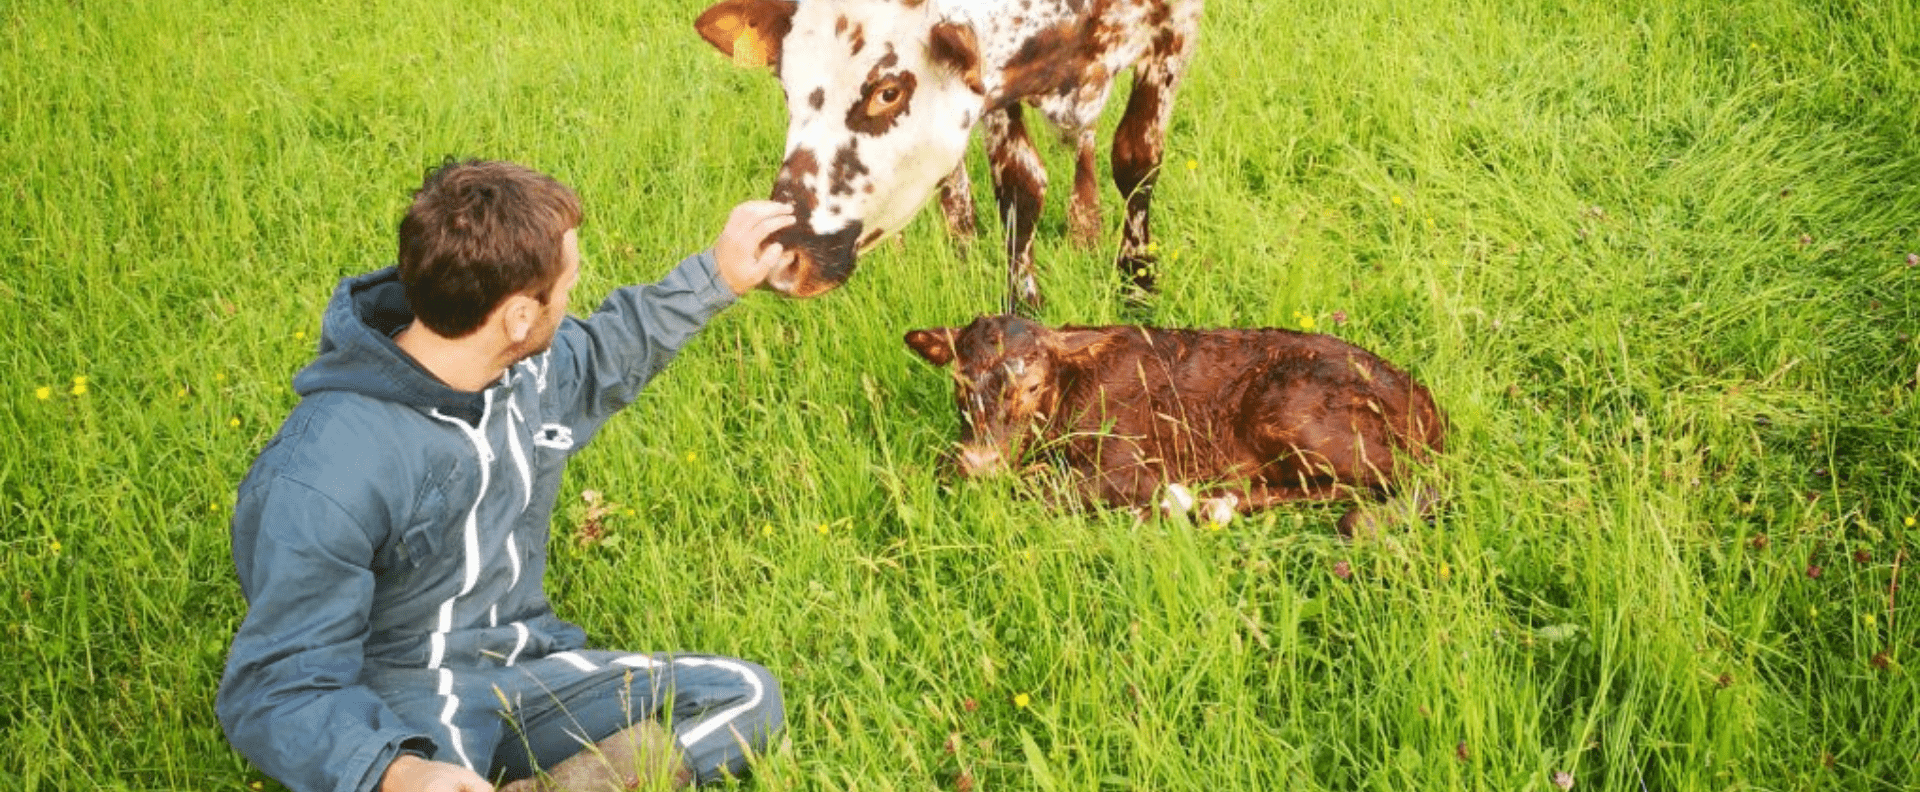 ferme des douces prairies - cotentin - normandie - ferme vente directe bio - agriculture biologique - lait - vaches laitières normandes - champ printemps - equipe - slider-min